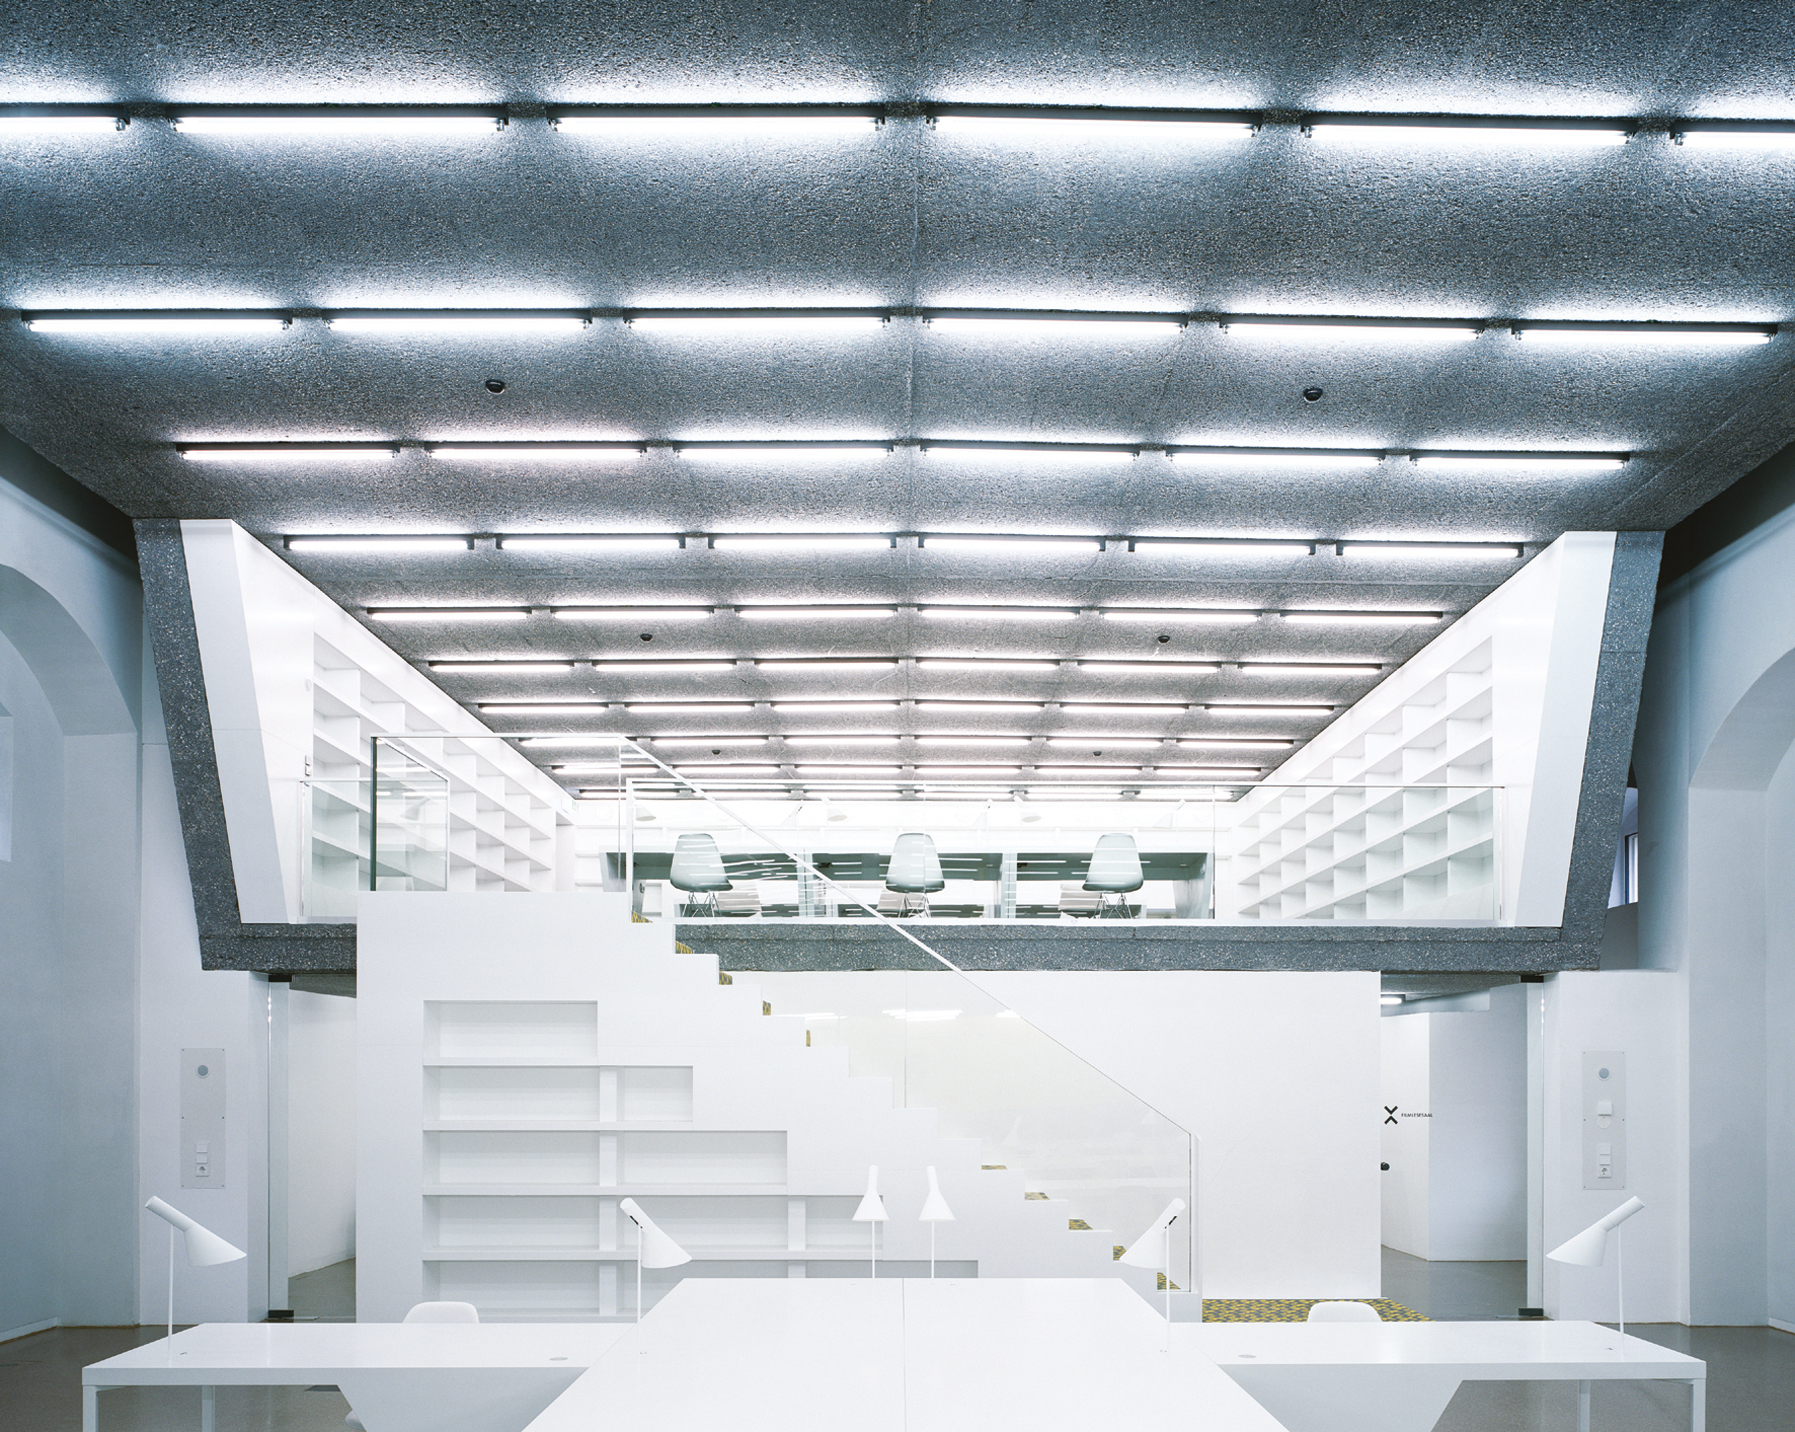 Exhibition view from “AFF Architekten”